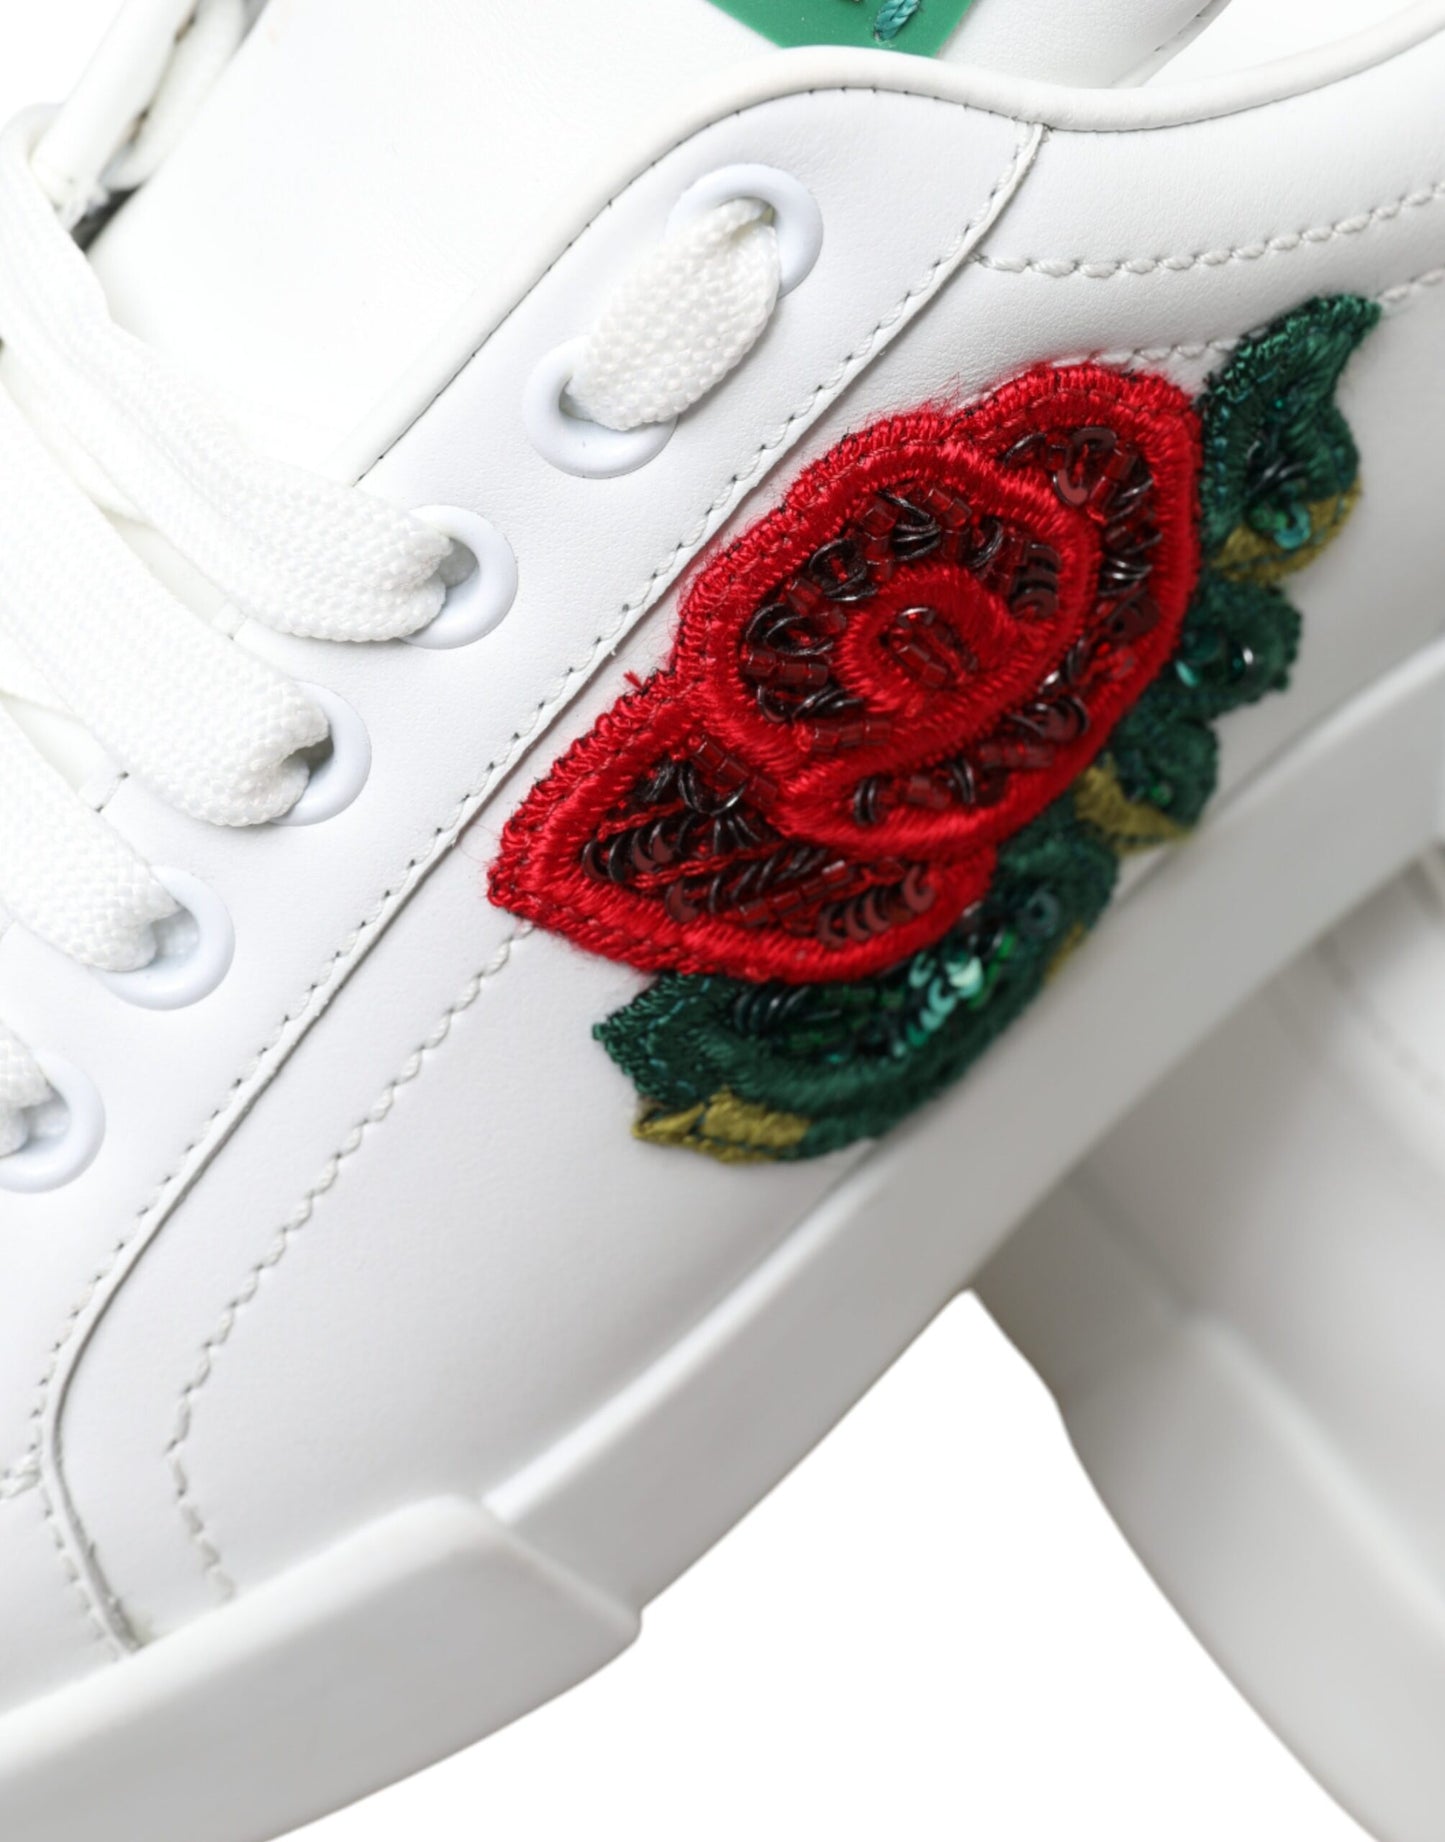 Dolce & Gabbana Exclusive White Portofino Leather Sneakers